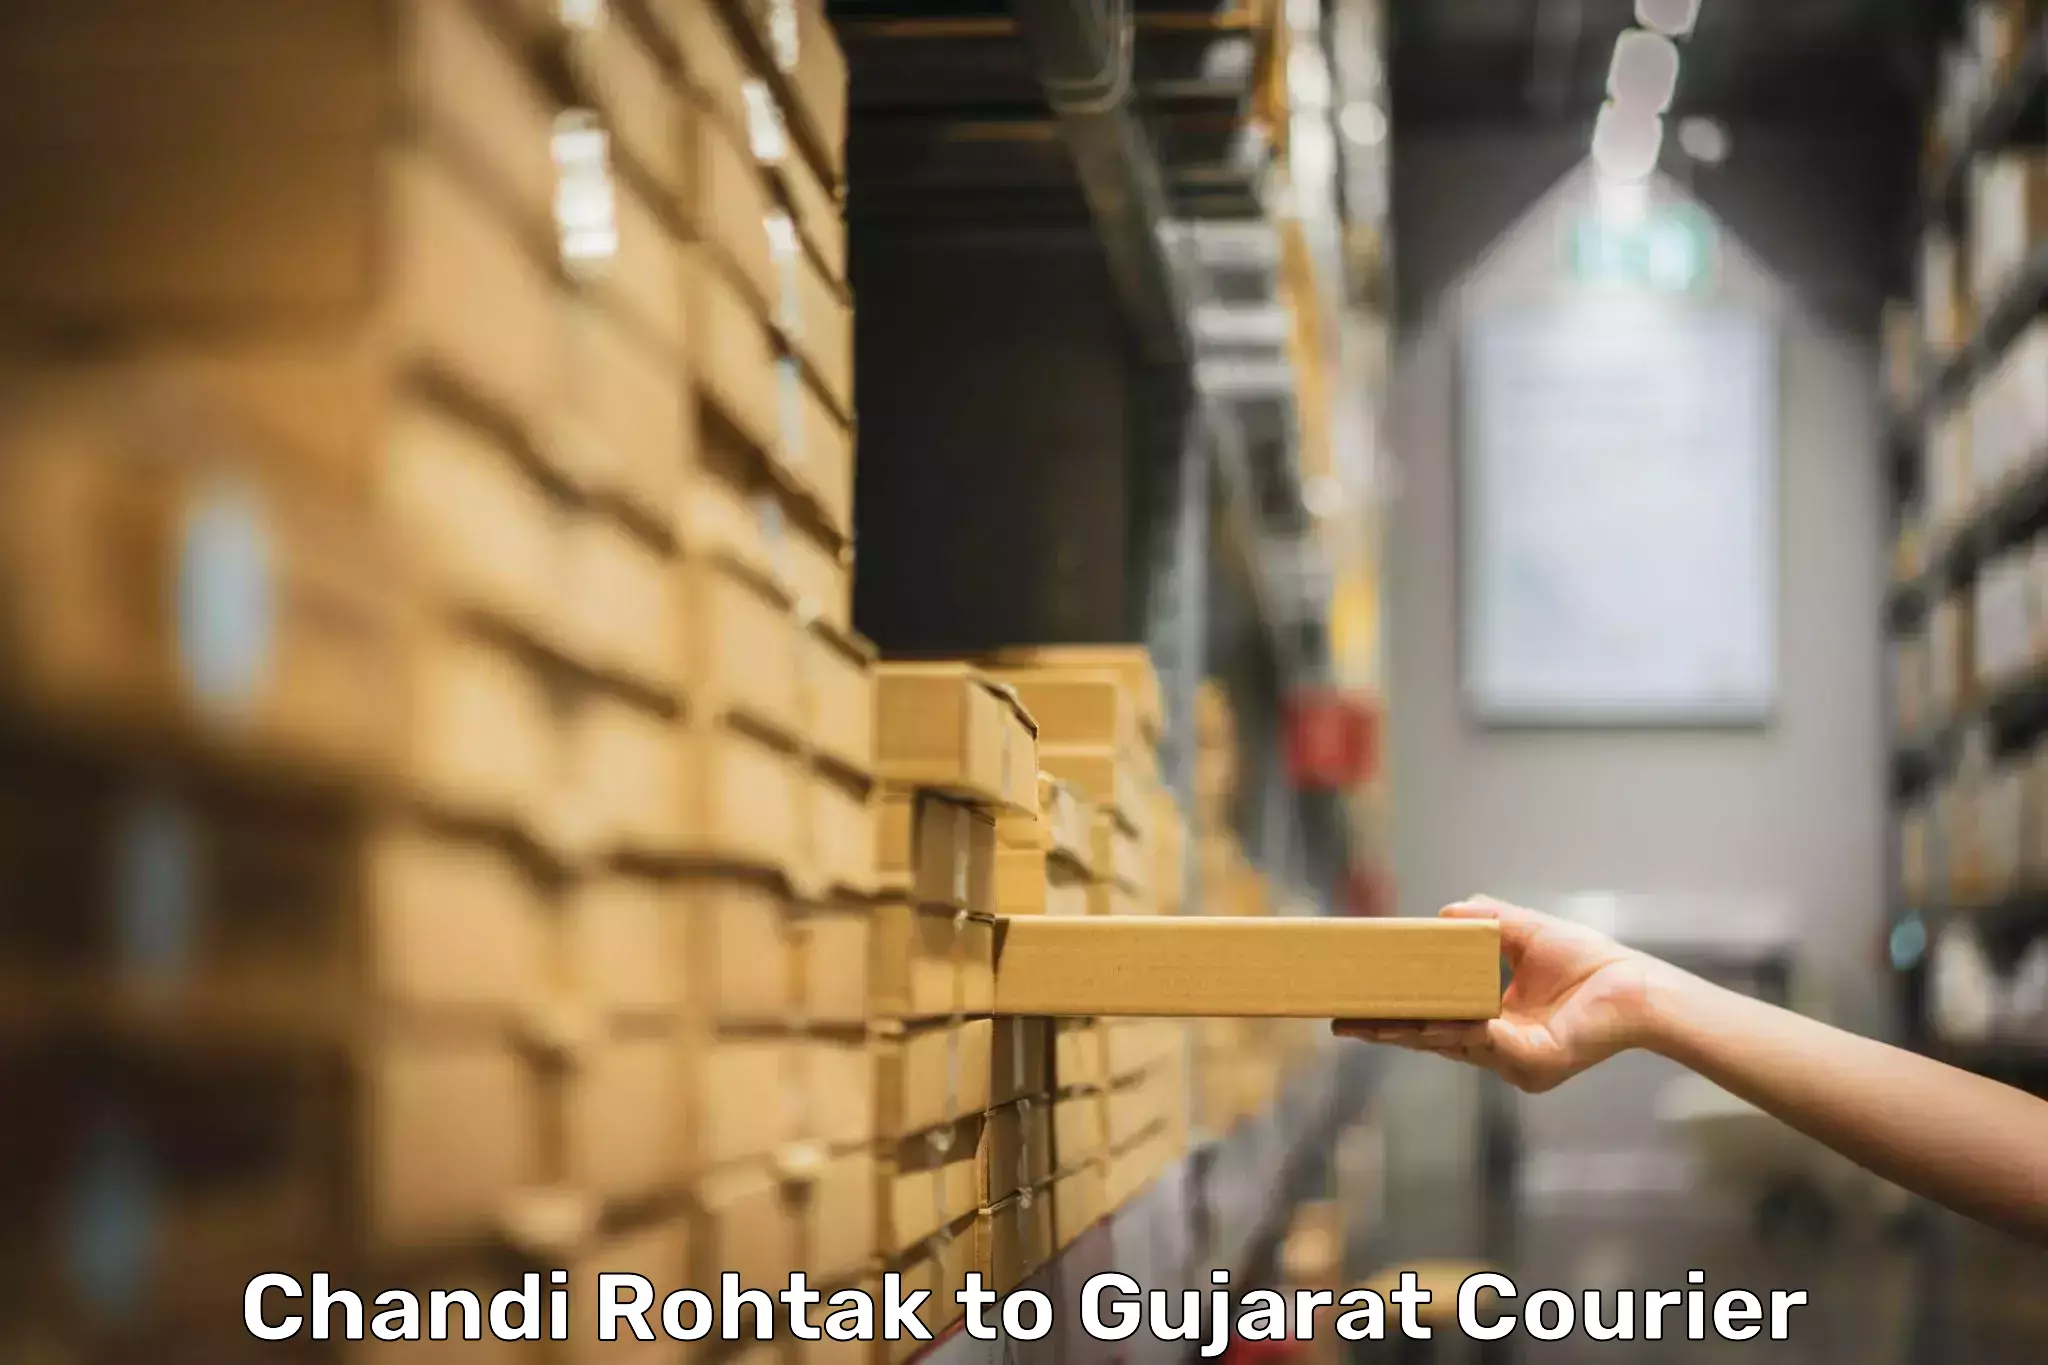 Luggage transport company Chandi Rohtak to Gujarat